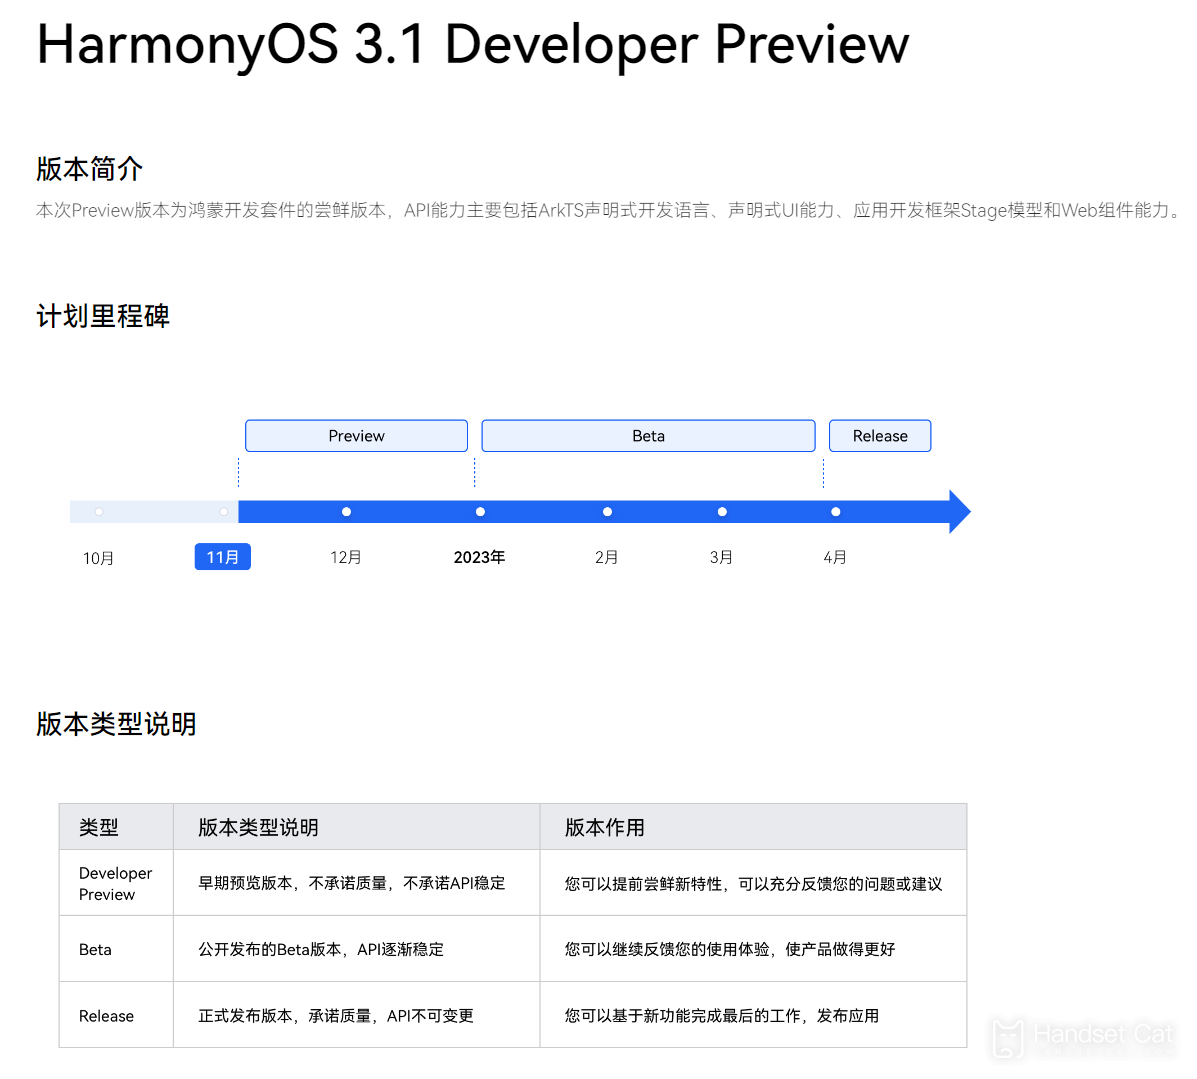 HarmonyOS 3.1 เวอร์ชันเบต้าสำหรับนักพัฒนาได้เปิดตัวการรับสมัครเบต้าสาธารณะแล้ว และชุดแรกรองรับเฉพาะ Huawei P50/Pro เท่านั้น